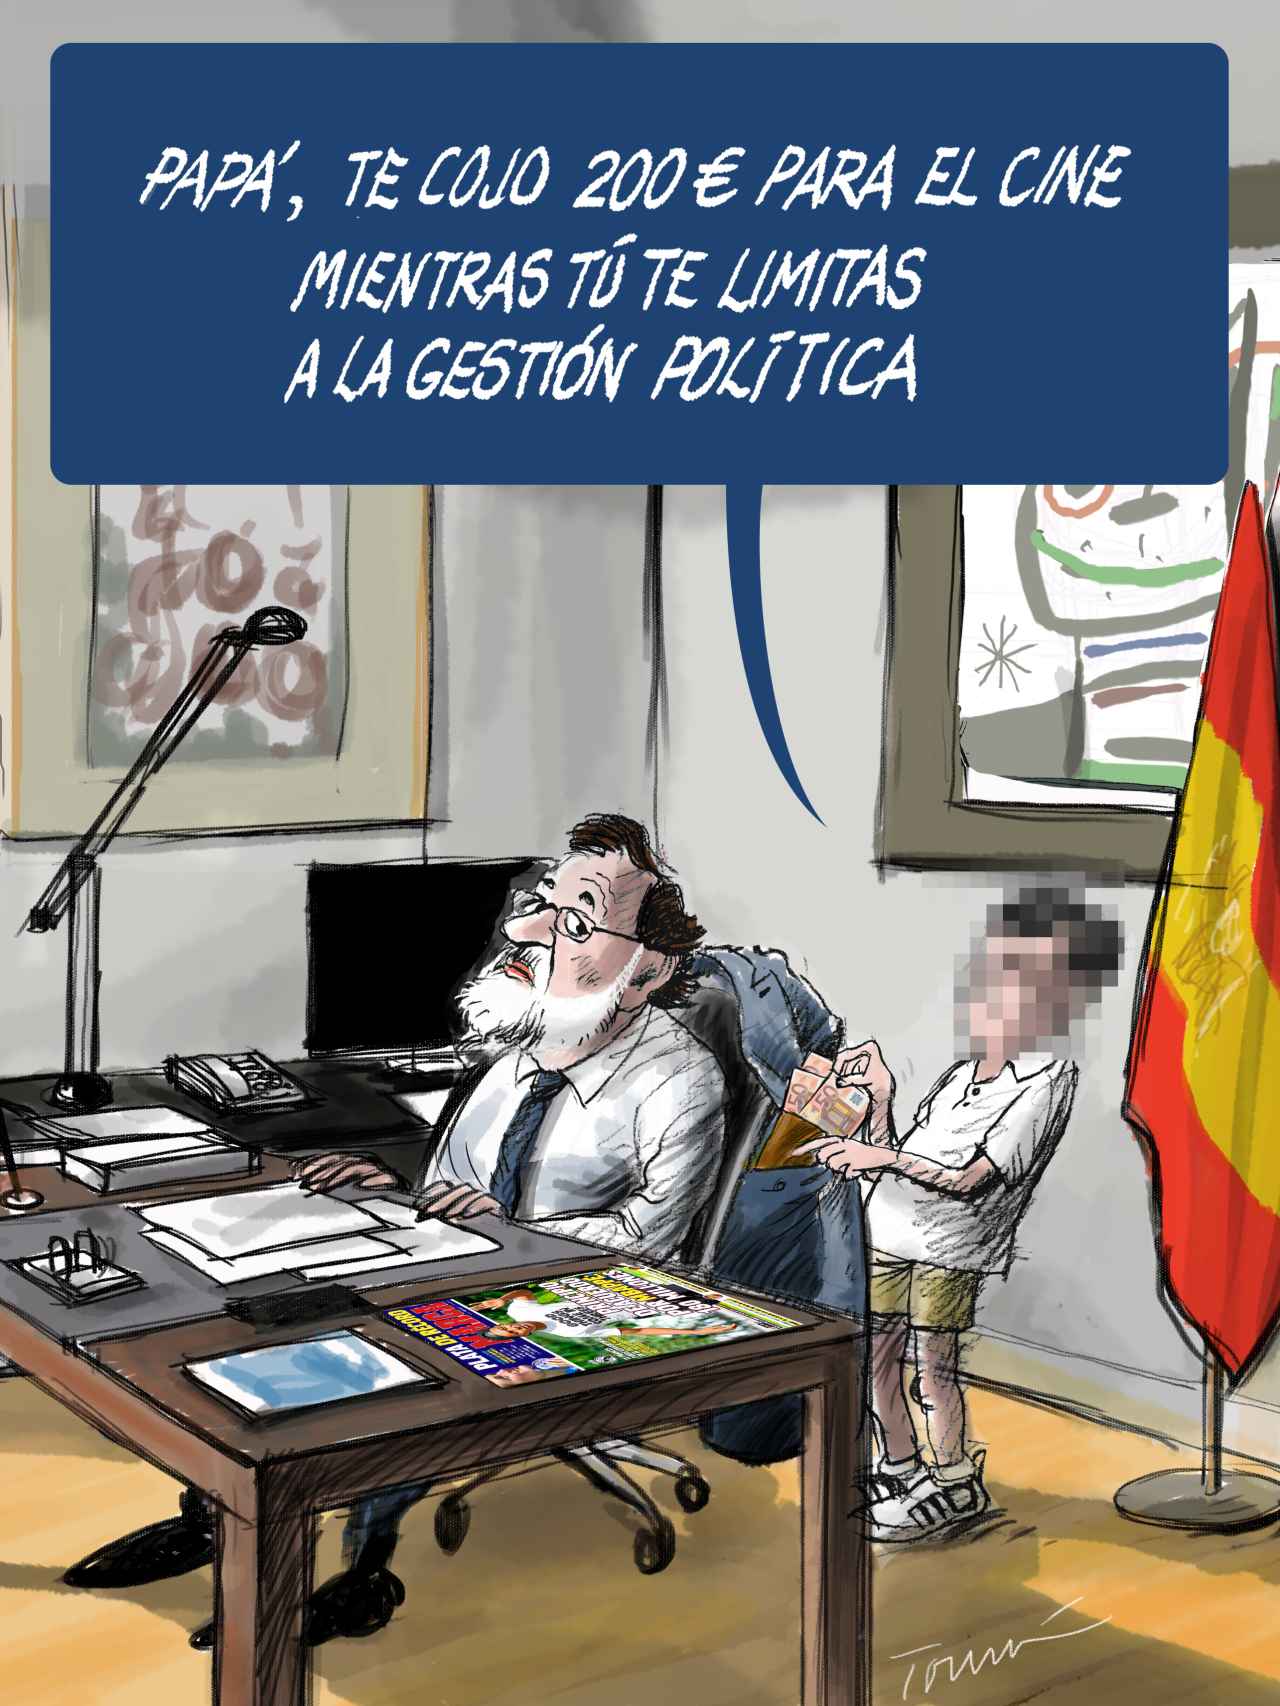 La gestión política de Rajoy